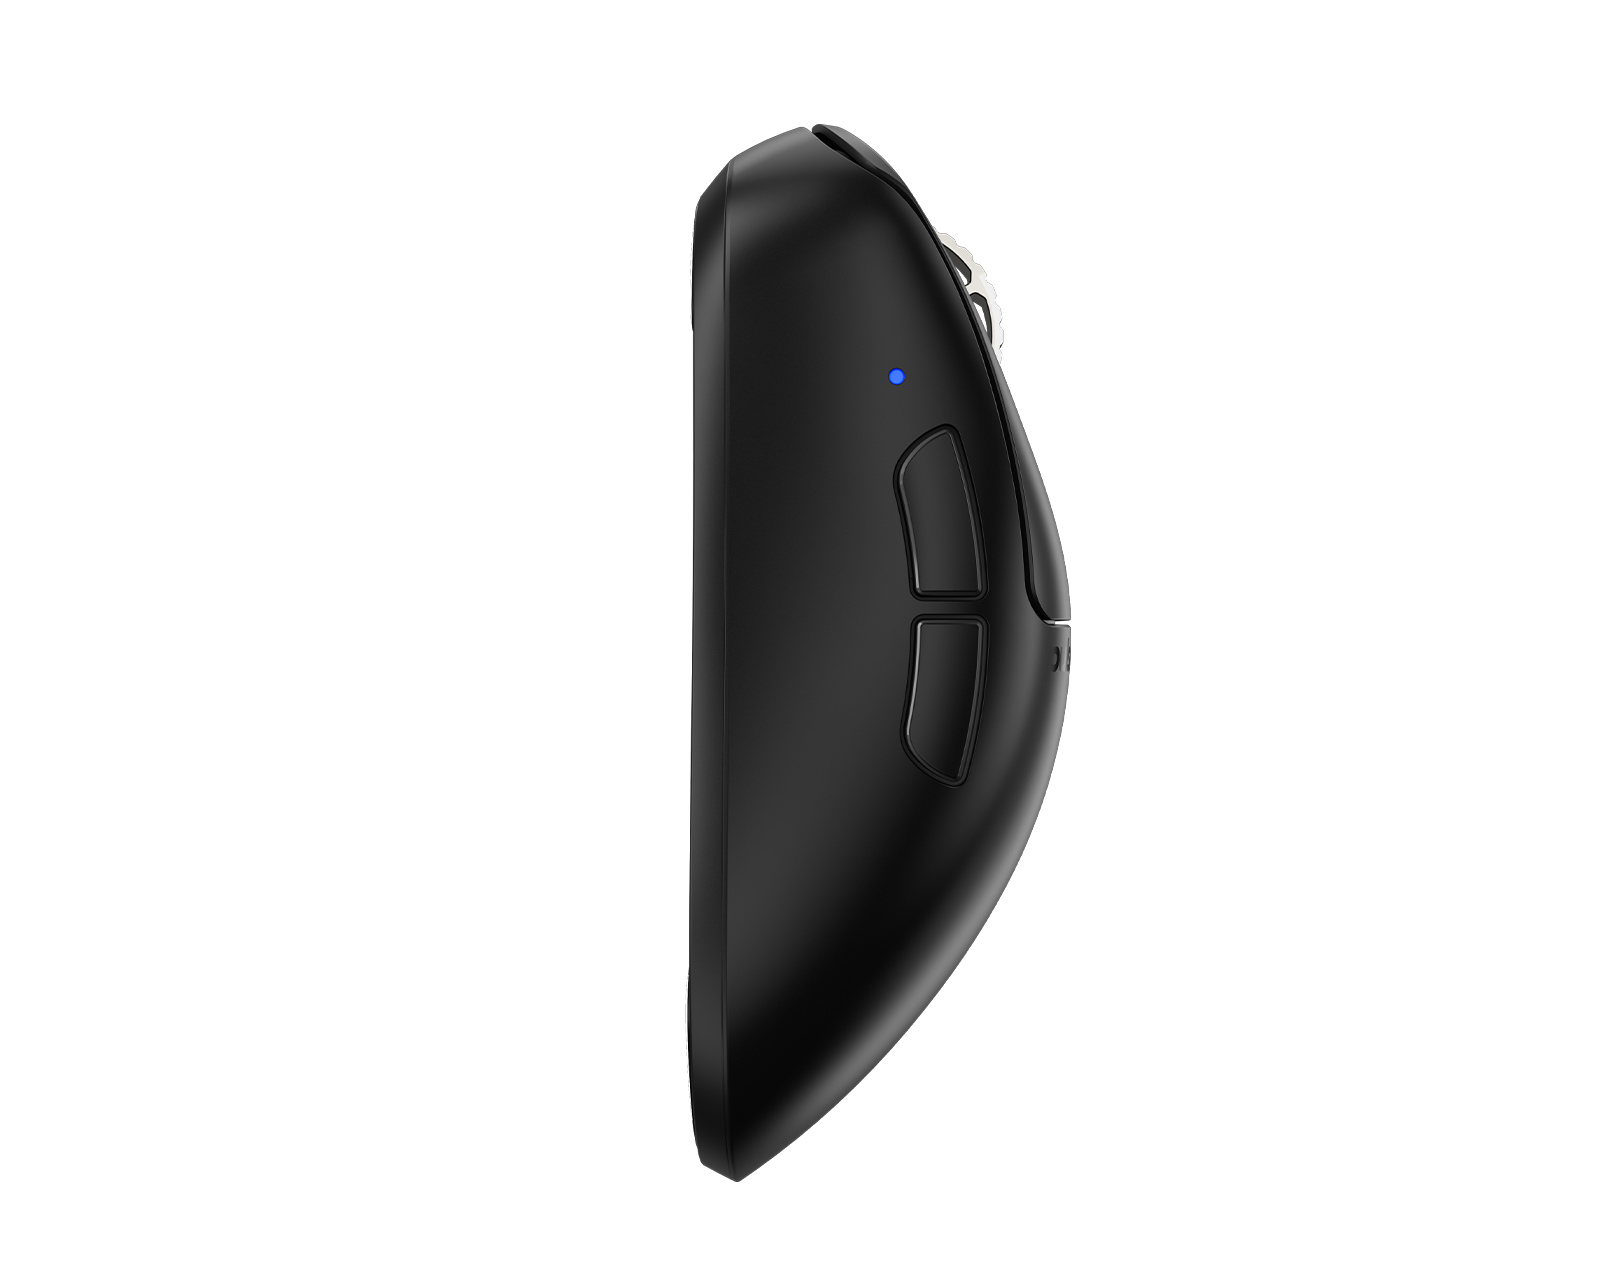 Pulsar Xlite V3 eS Wireless Gaming Mouse - Black - us.MaxGaming.com